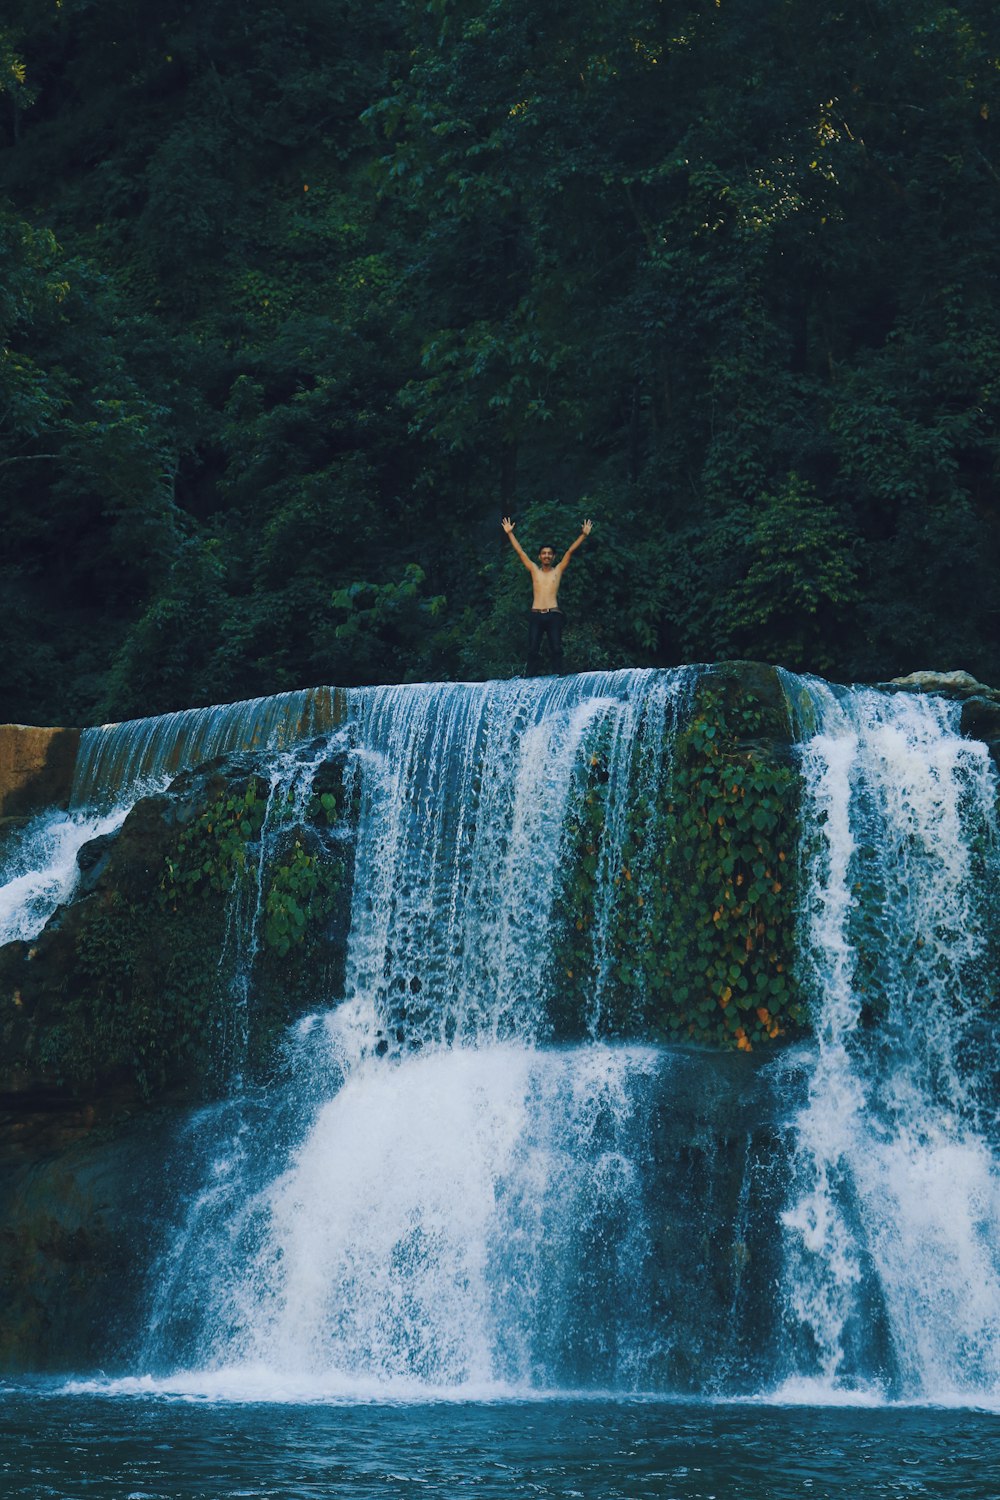 man jumping on waterfalls during daytime